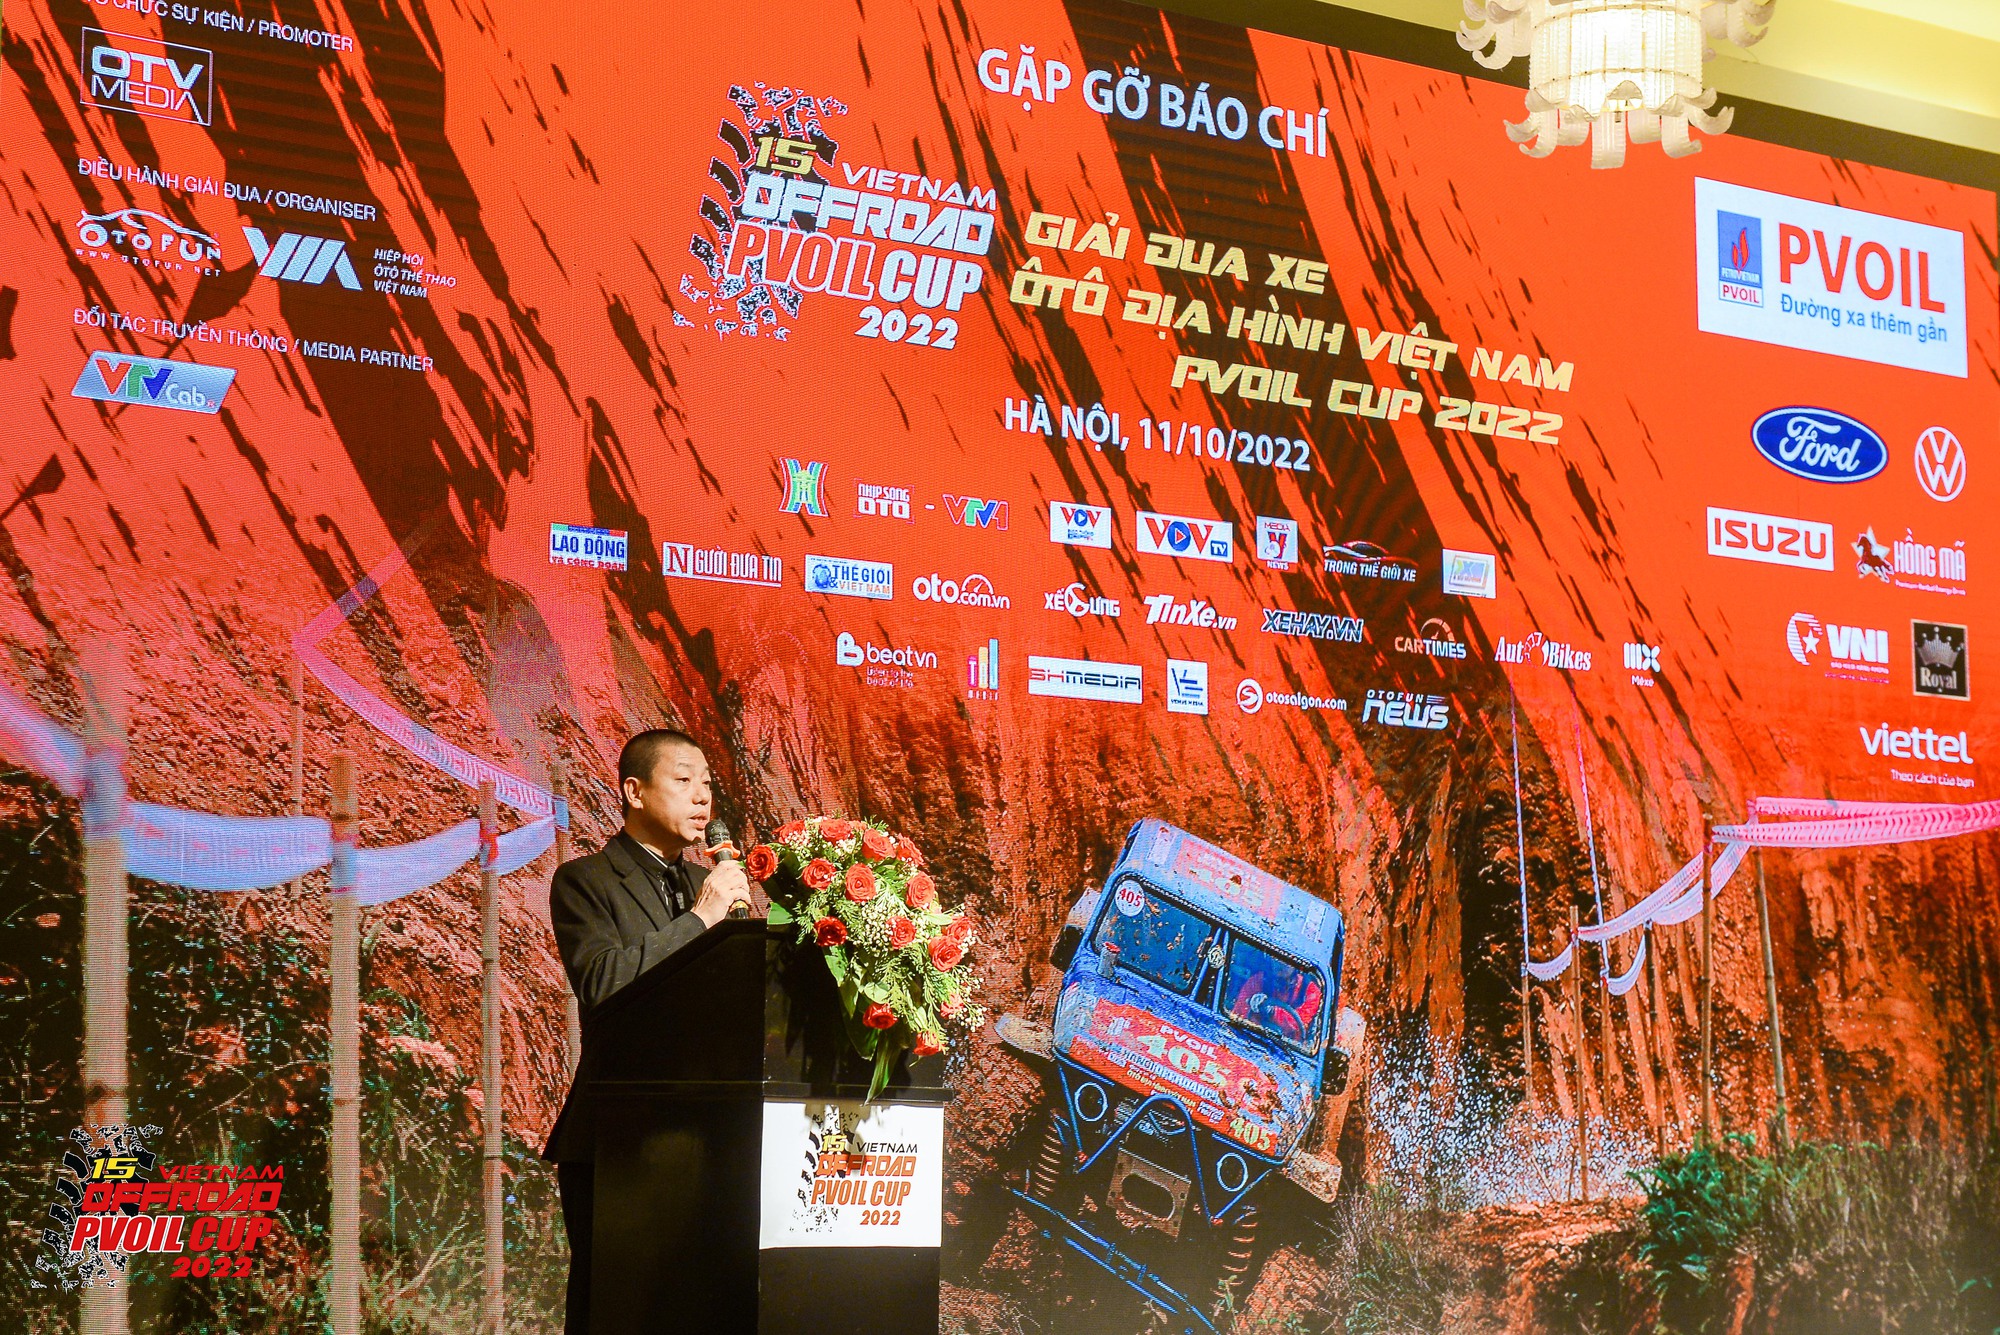 Giải đua địa hình lớn nhất Việt Nam khởi tranh: Giải thưởng lên tới 1,1 tỷ đồng với hơn 700 bài thi  - Ảnh 1.